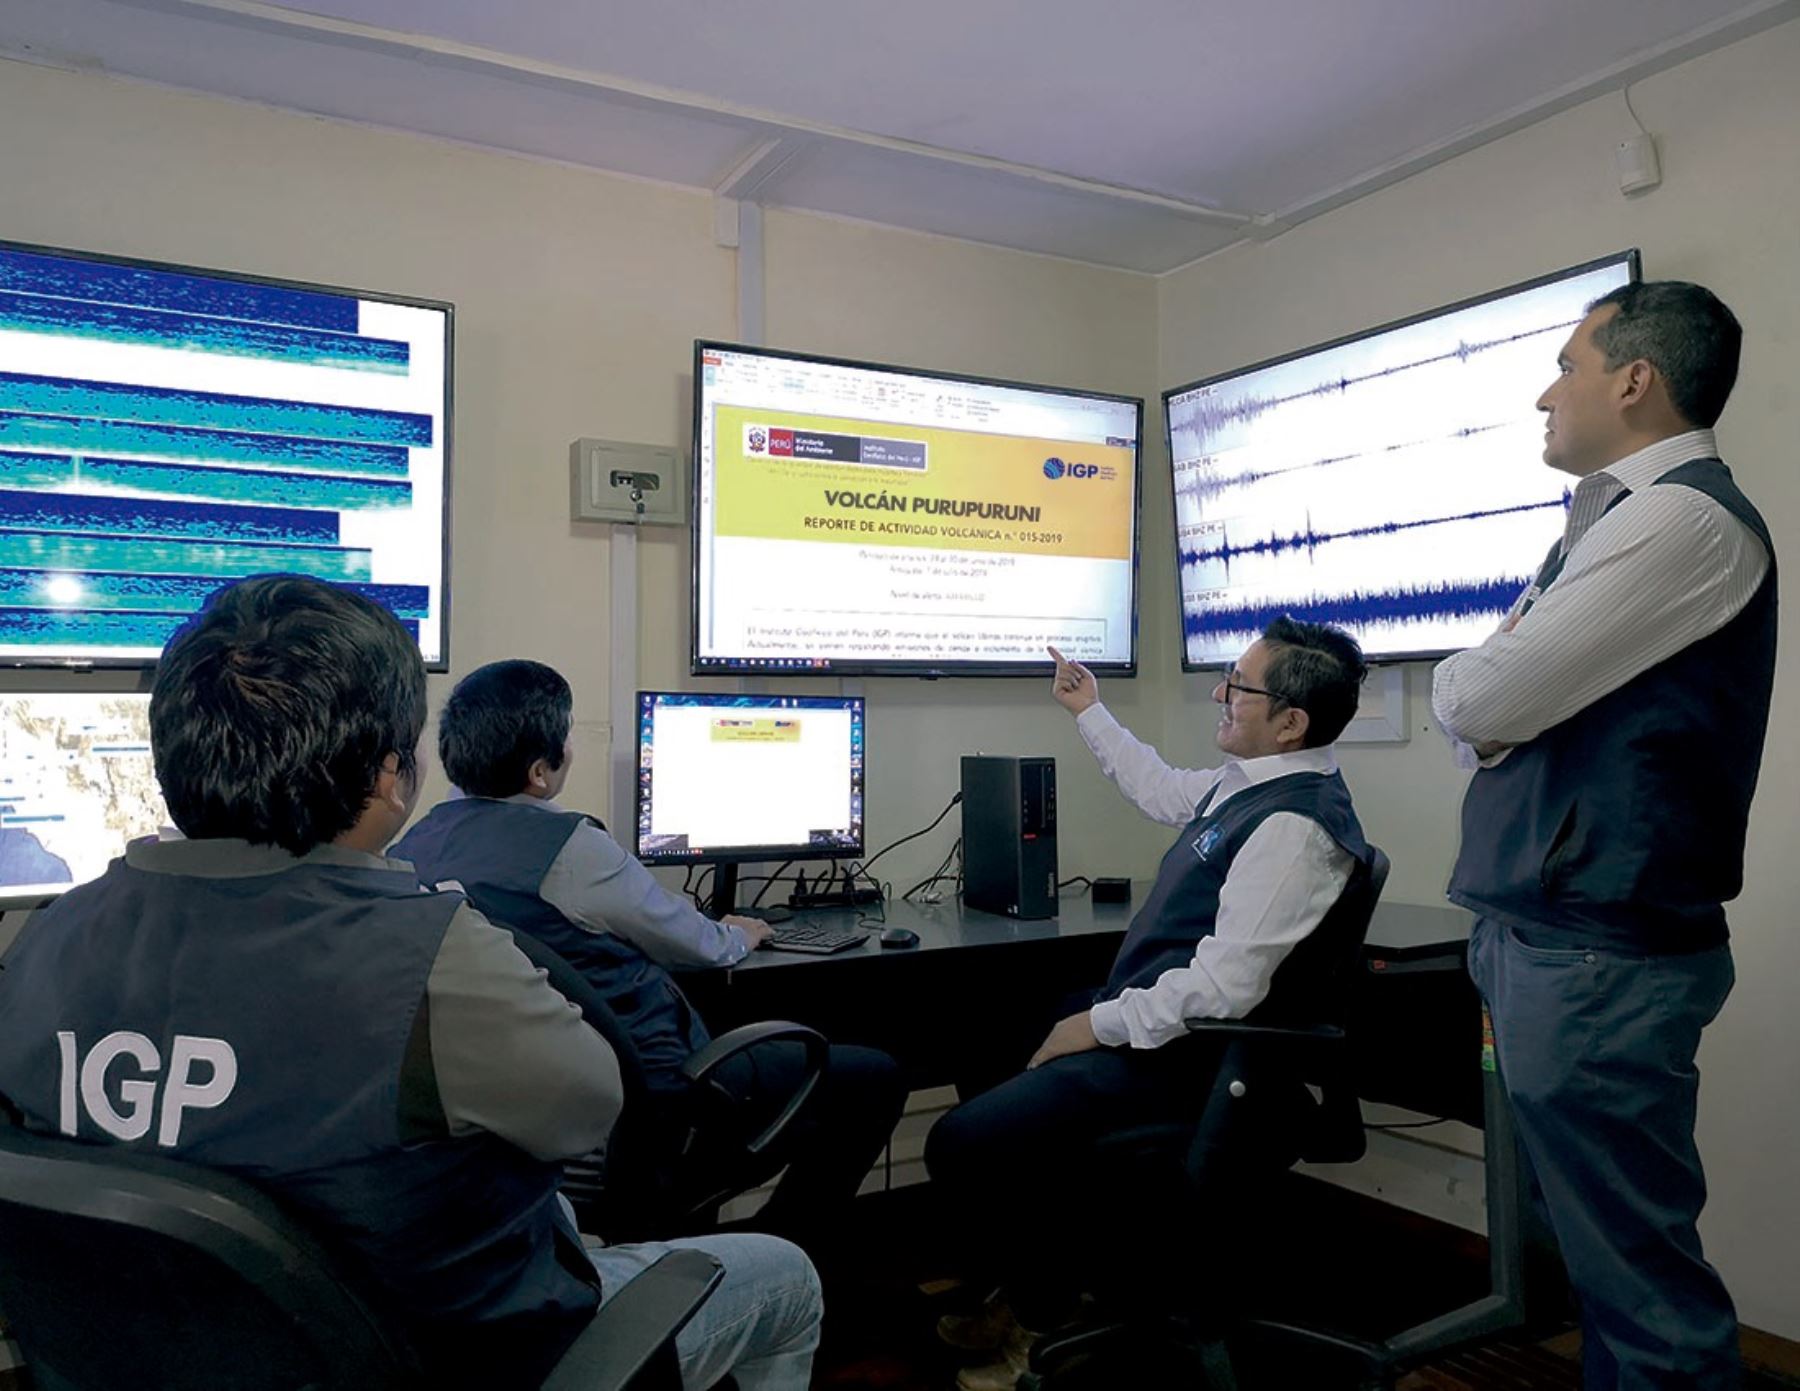 Especialistas del IGP inician vigilancia y estudio del volcán Purupurini, ubicado en Tacna. El monitoreo se desarrolla en tiempo real. ANDINA/Difusión